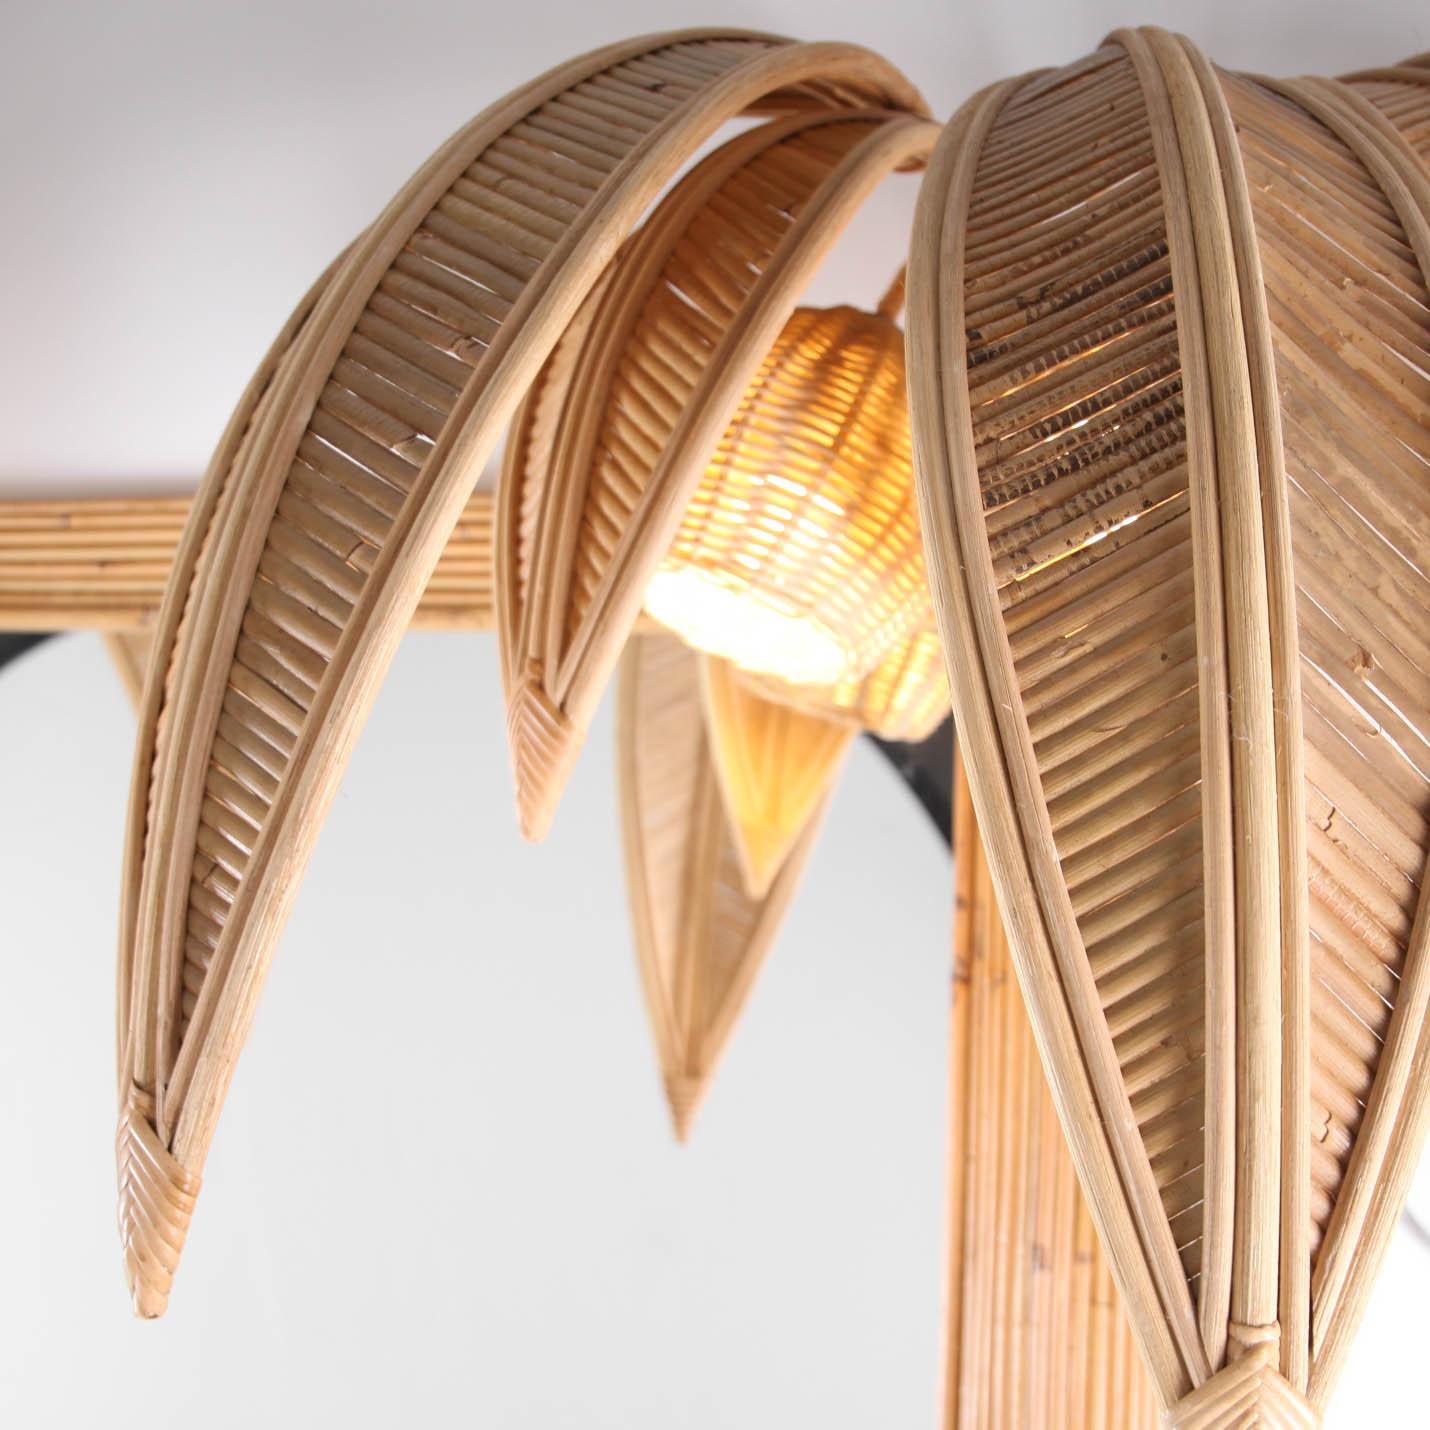 Seltene große Rattan Kokosnussbaum / Palme in voller Länge Spiegel mit 4 Lichter in den Kokosnüssen. Typisch für die siebziger Jahre und inspiriert von der Arbeit von Maison Jansen.
Hochwertige, vollständig handgefertigte Arbeiten. Ausgezeichneter